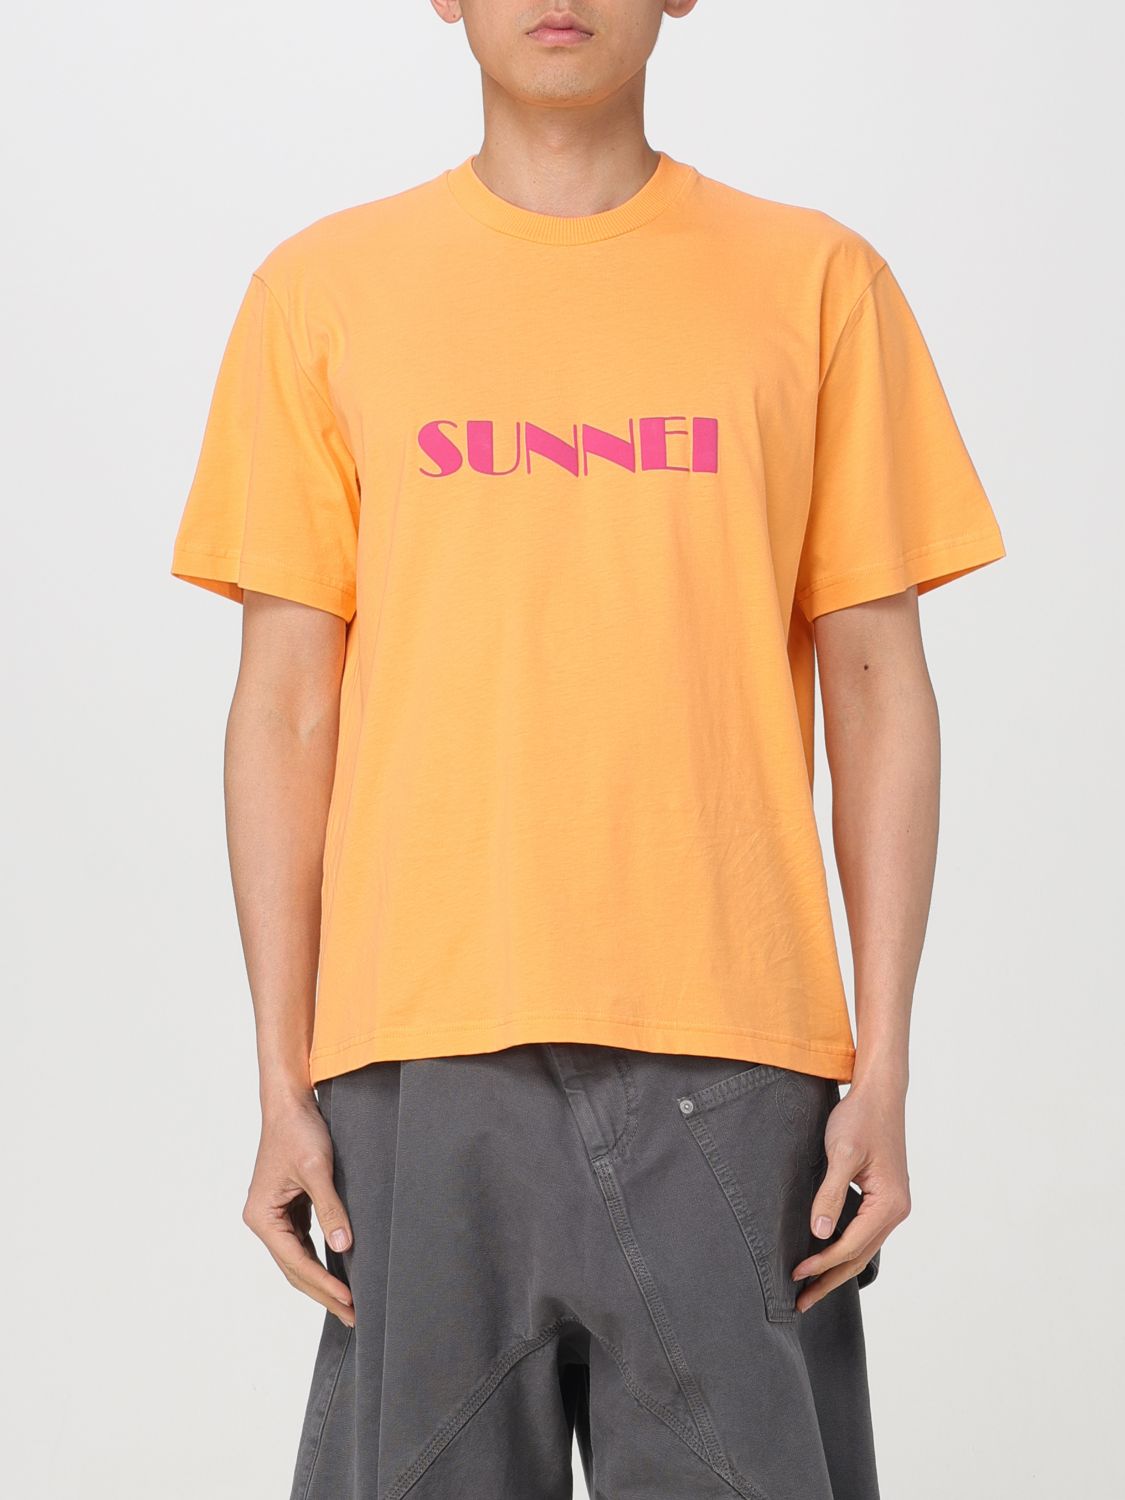 Sunnei T-shirt  Men Color Peach